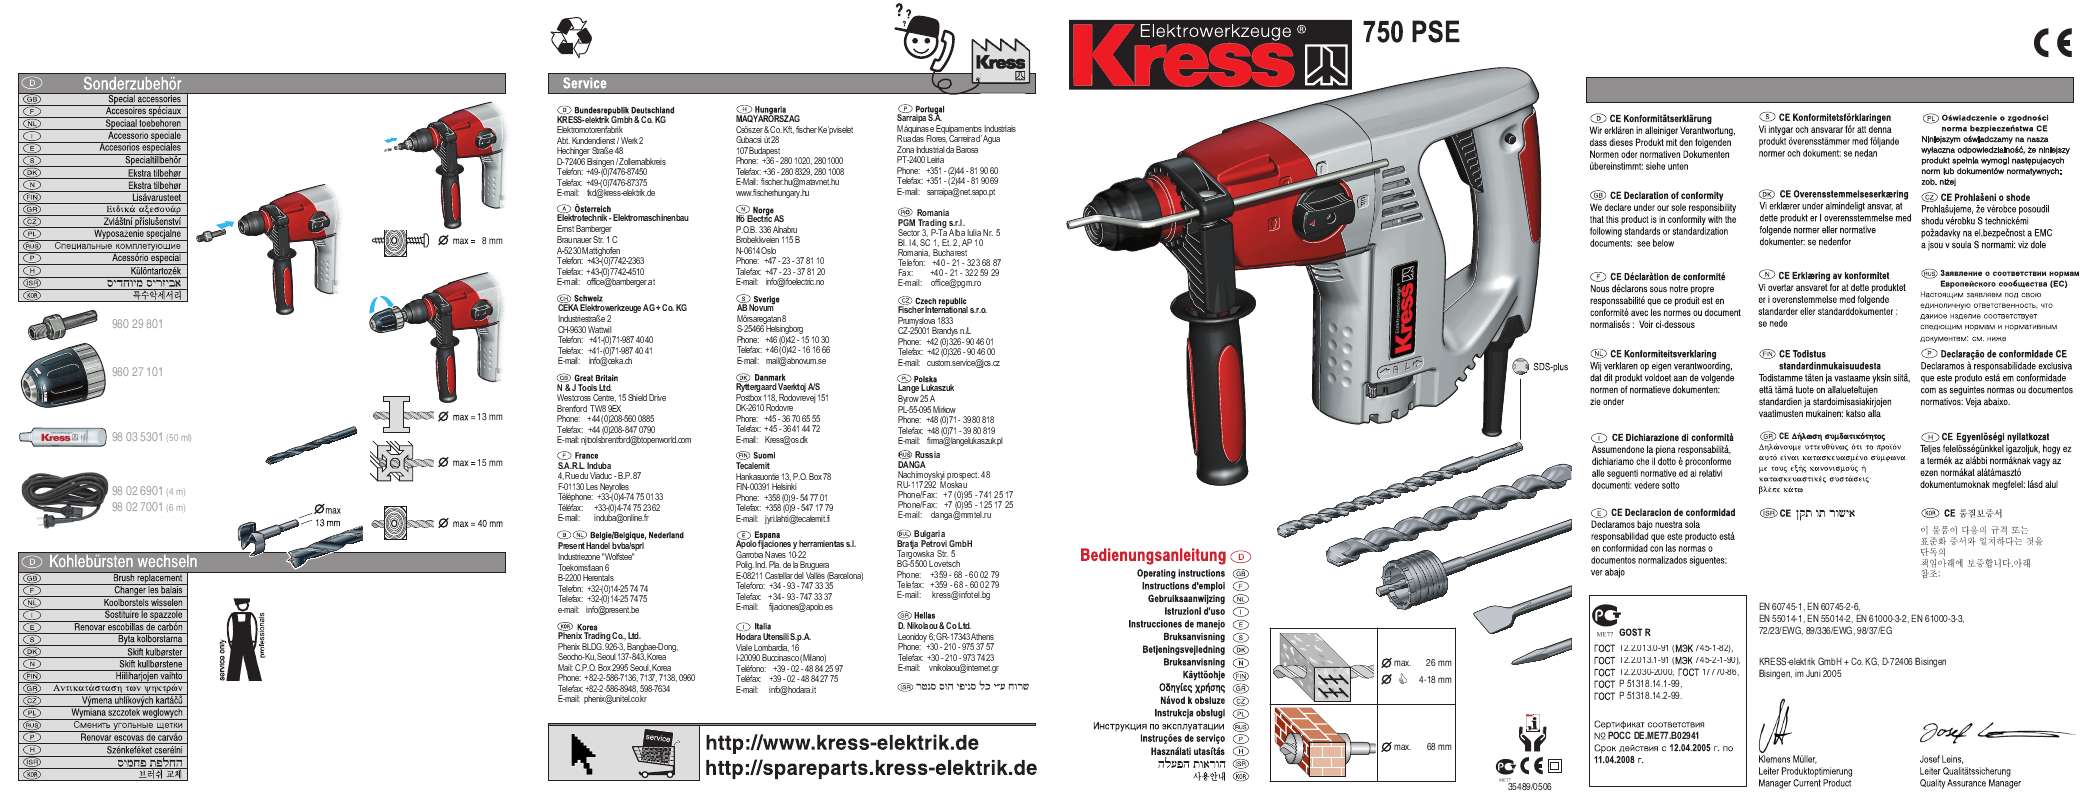 Guide utilisation KRESS 750 PSE  de la marque KRESS